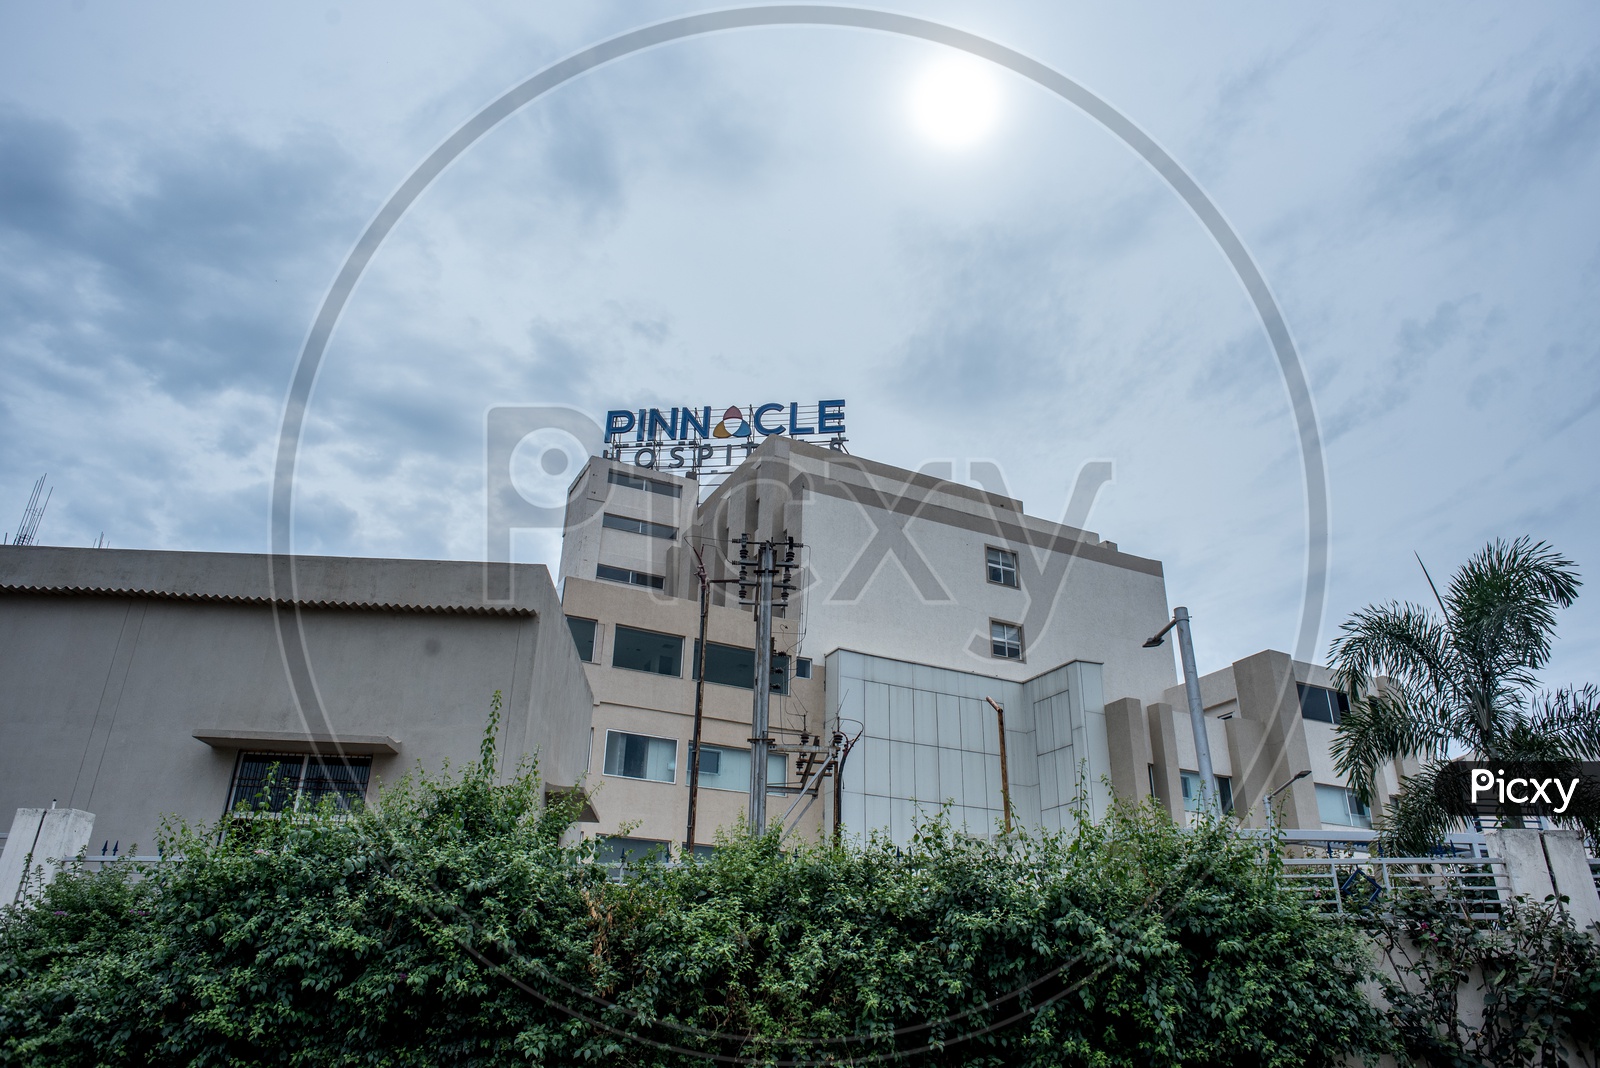 Pinnacle hospitals